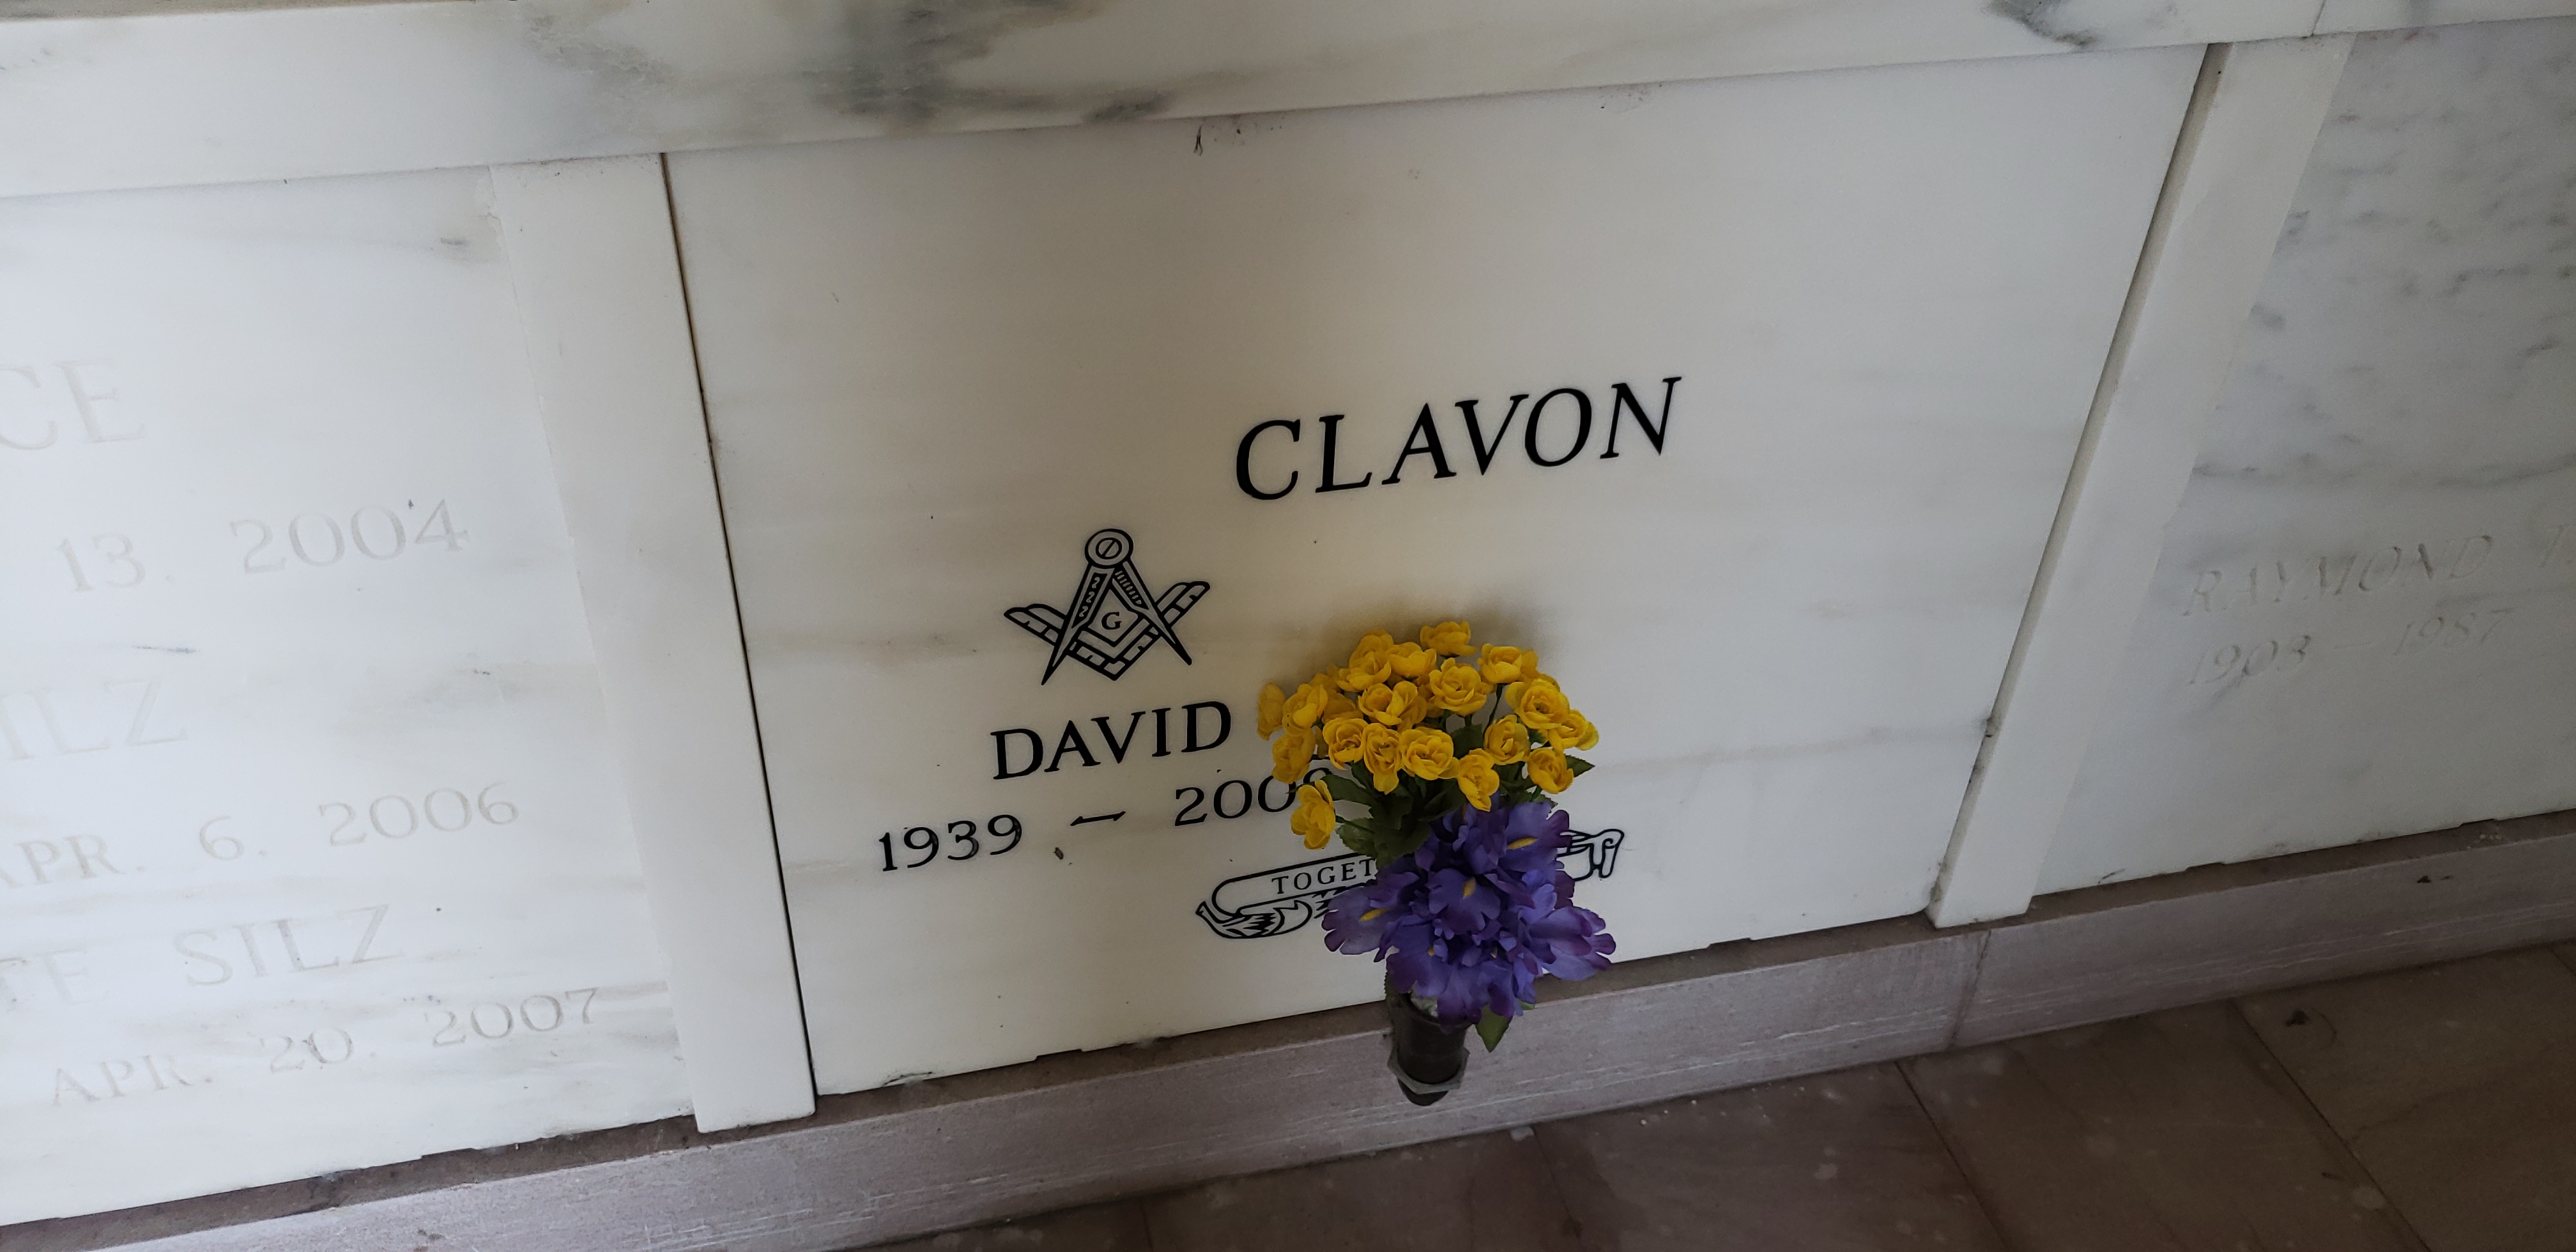 David Clavon